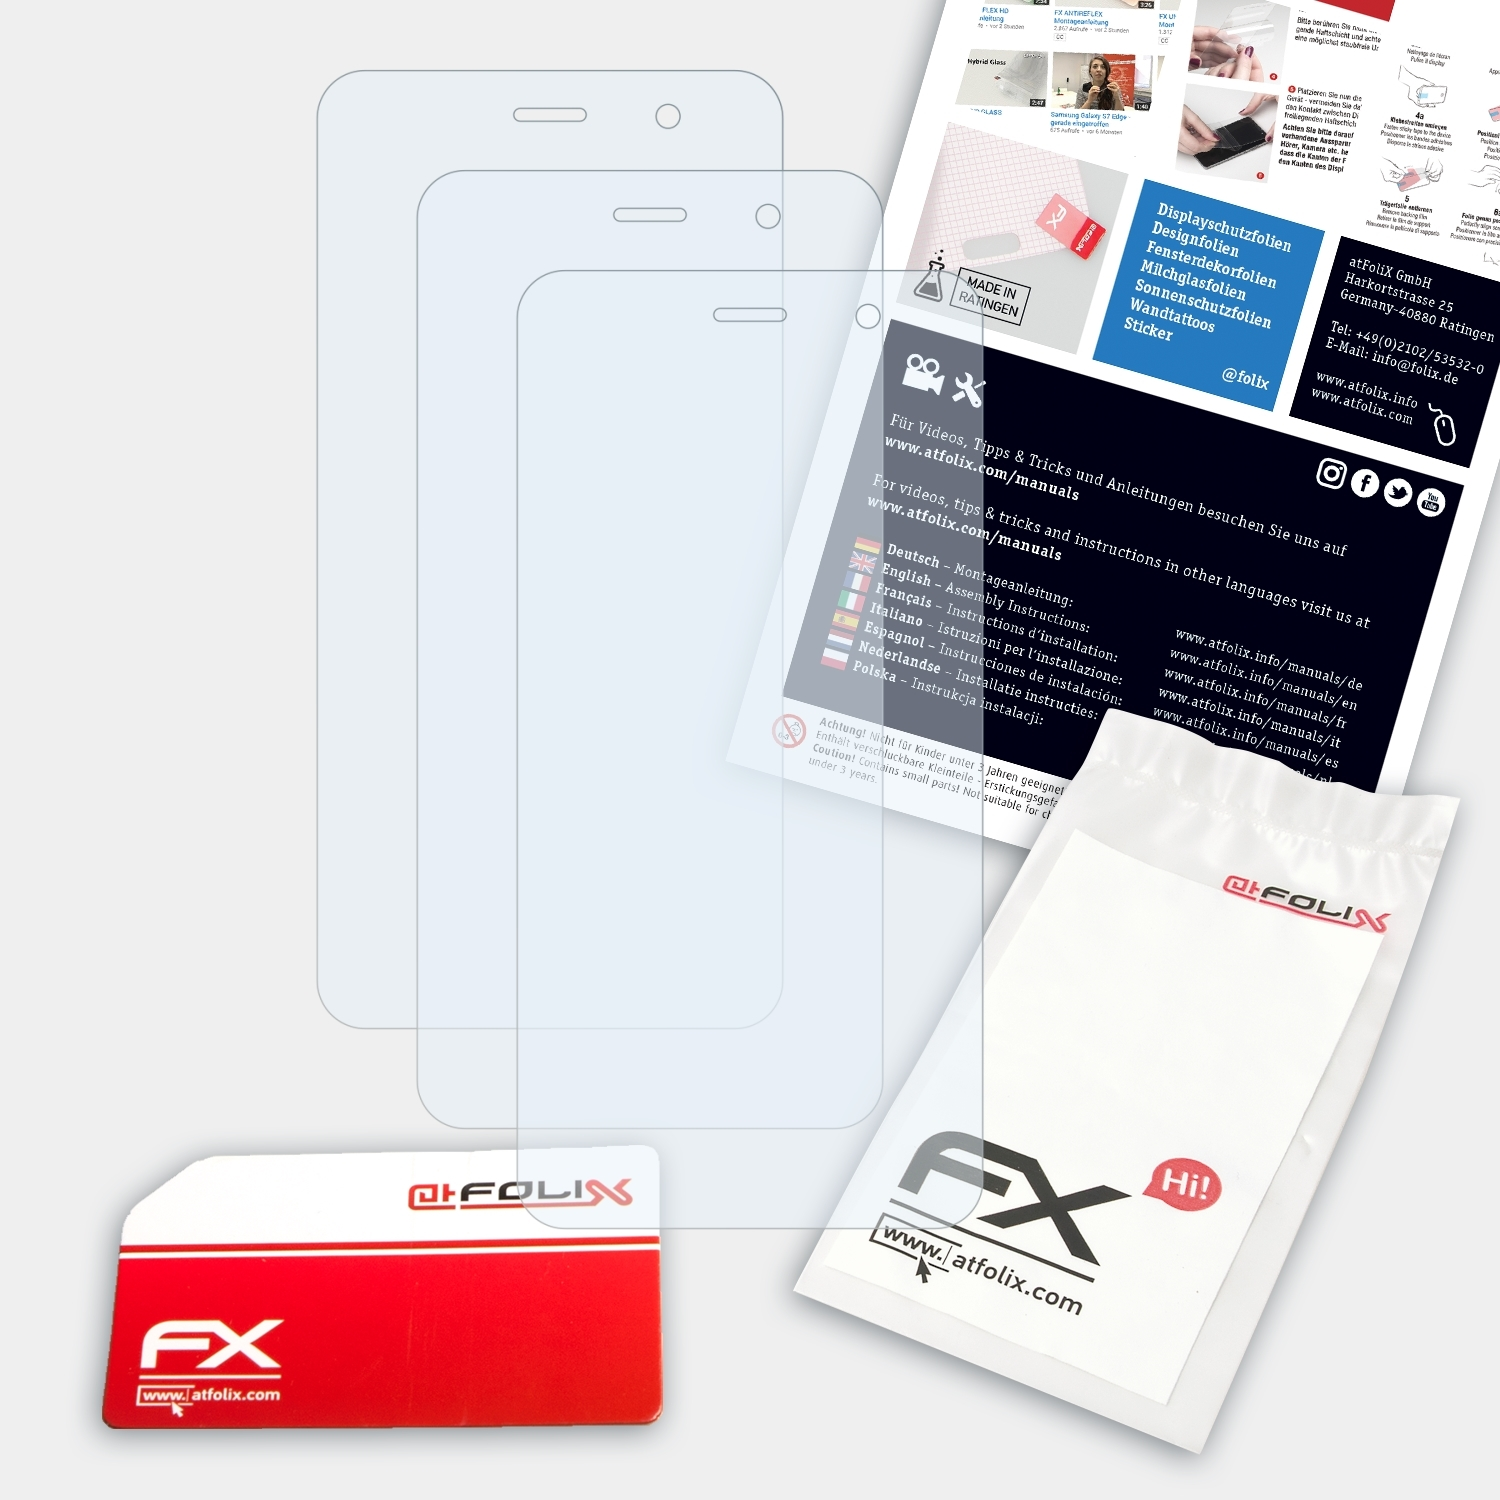 ATFOLIX 3x FX-Clear GS160) Gigaset Displayschutz(für